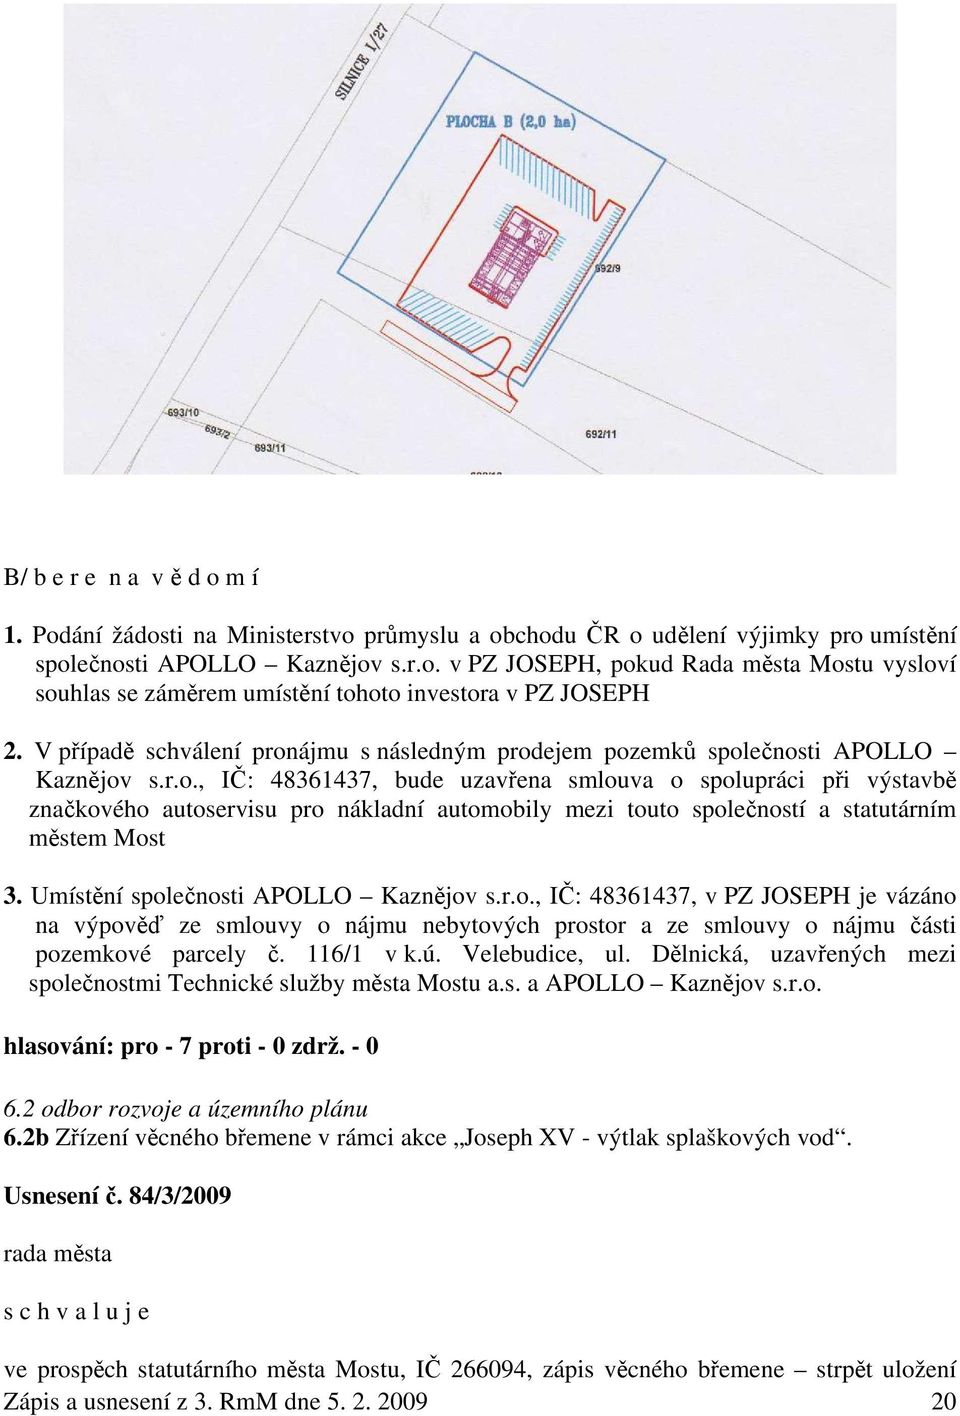 Umístění společnosti APOLLO Kaznějov s.r.o., IČ: 48361437, v PZ JOSEPH je vázáno na výpověď ze smlouvy o nájmu nebytových prostor a ze smlouvy o nájmu části pozemkové parcely č. 116/1 v k.ú.